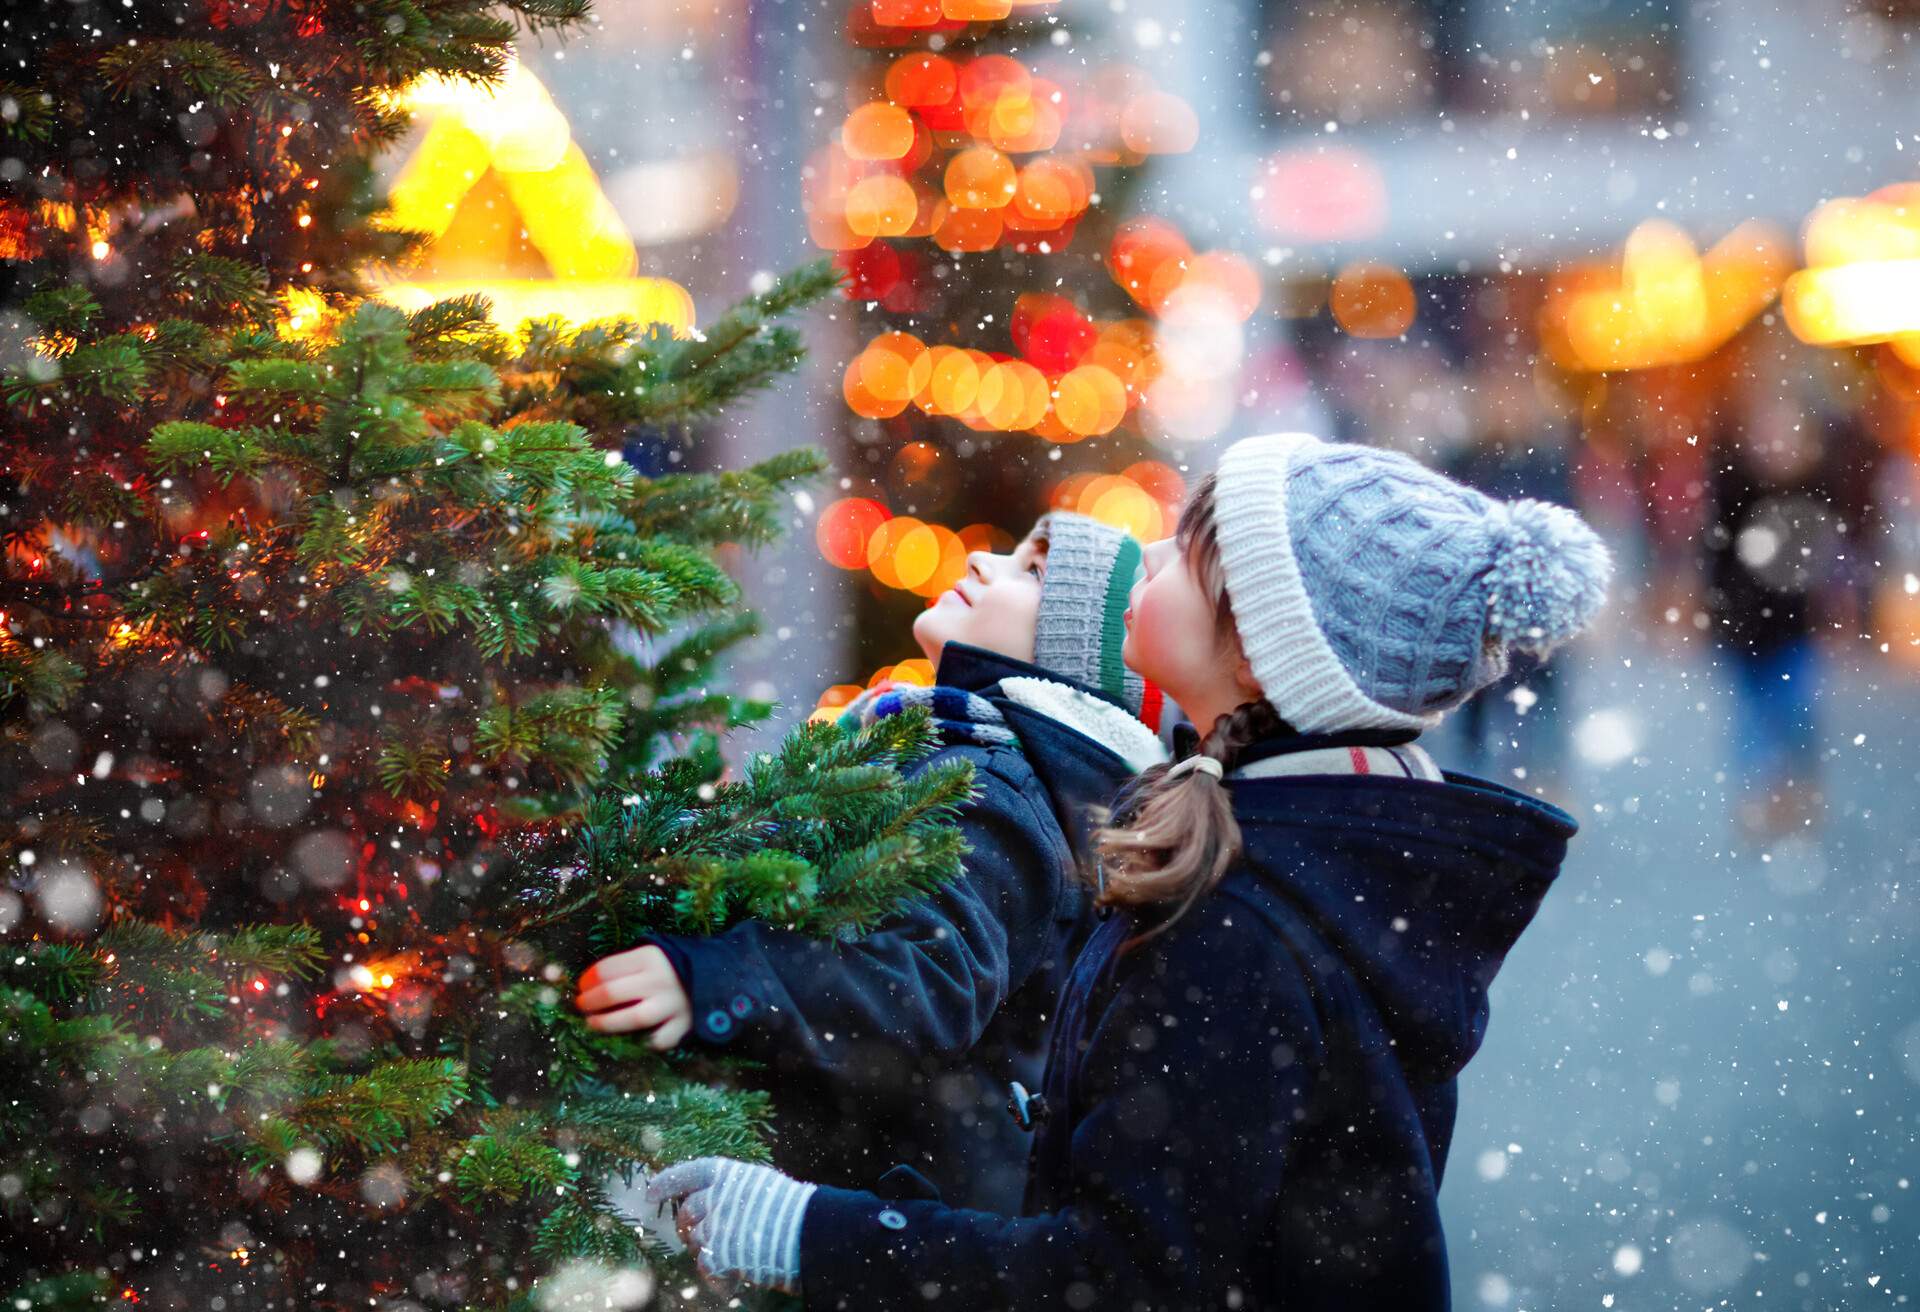 PEOPLE_KIDS_CHRISTMAN_MARKET_SNOW_TREE